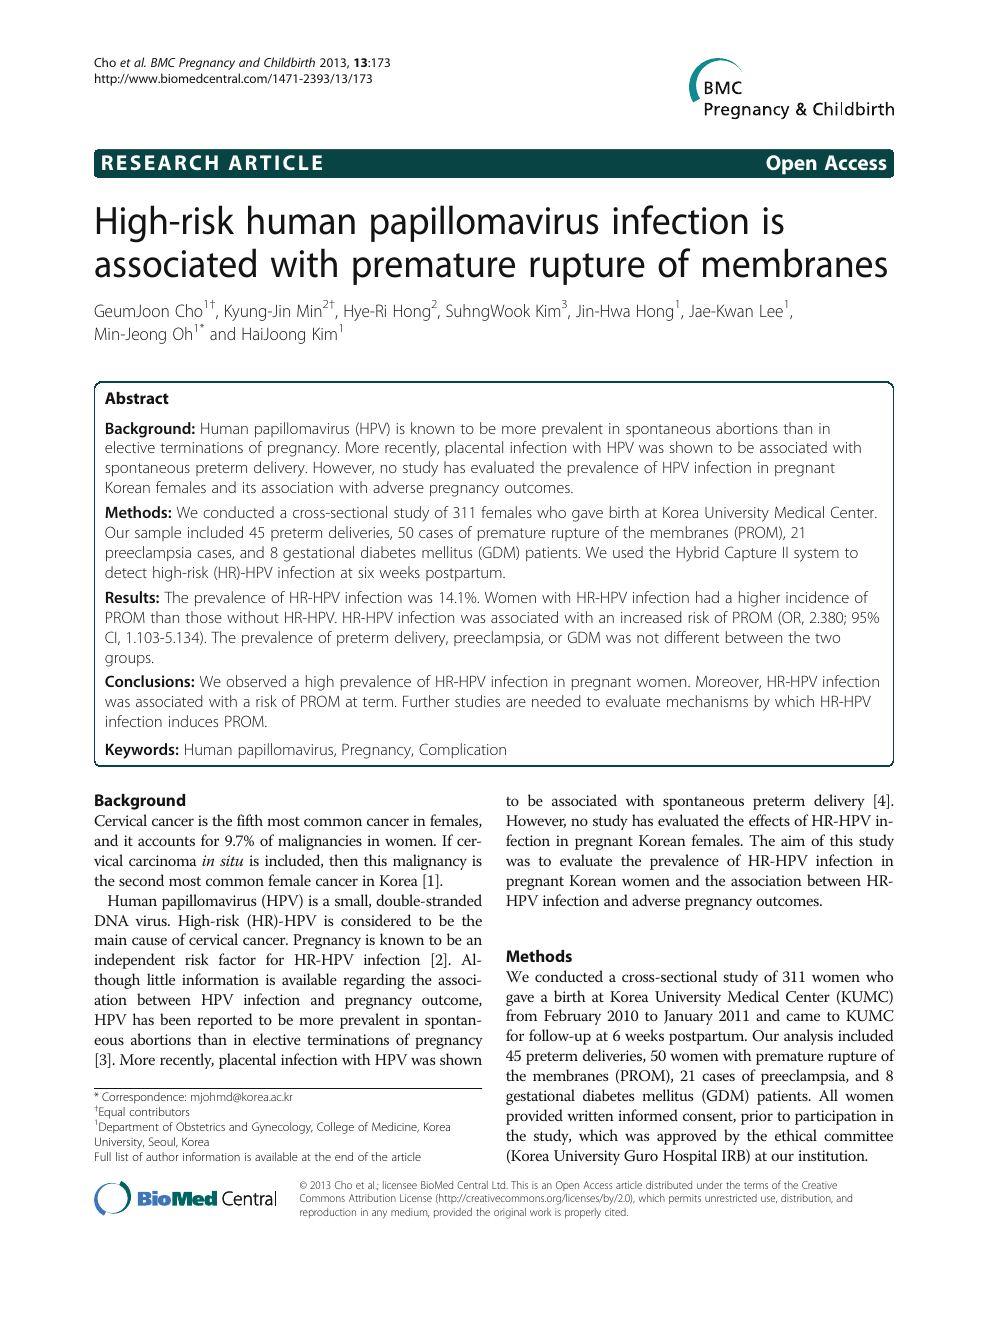 human papillomavirus infection when pregnant)